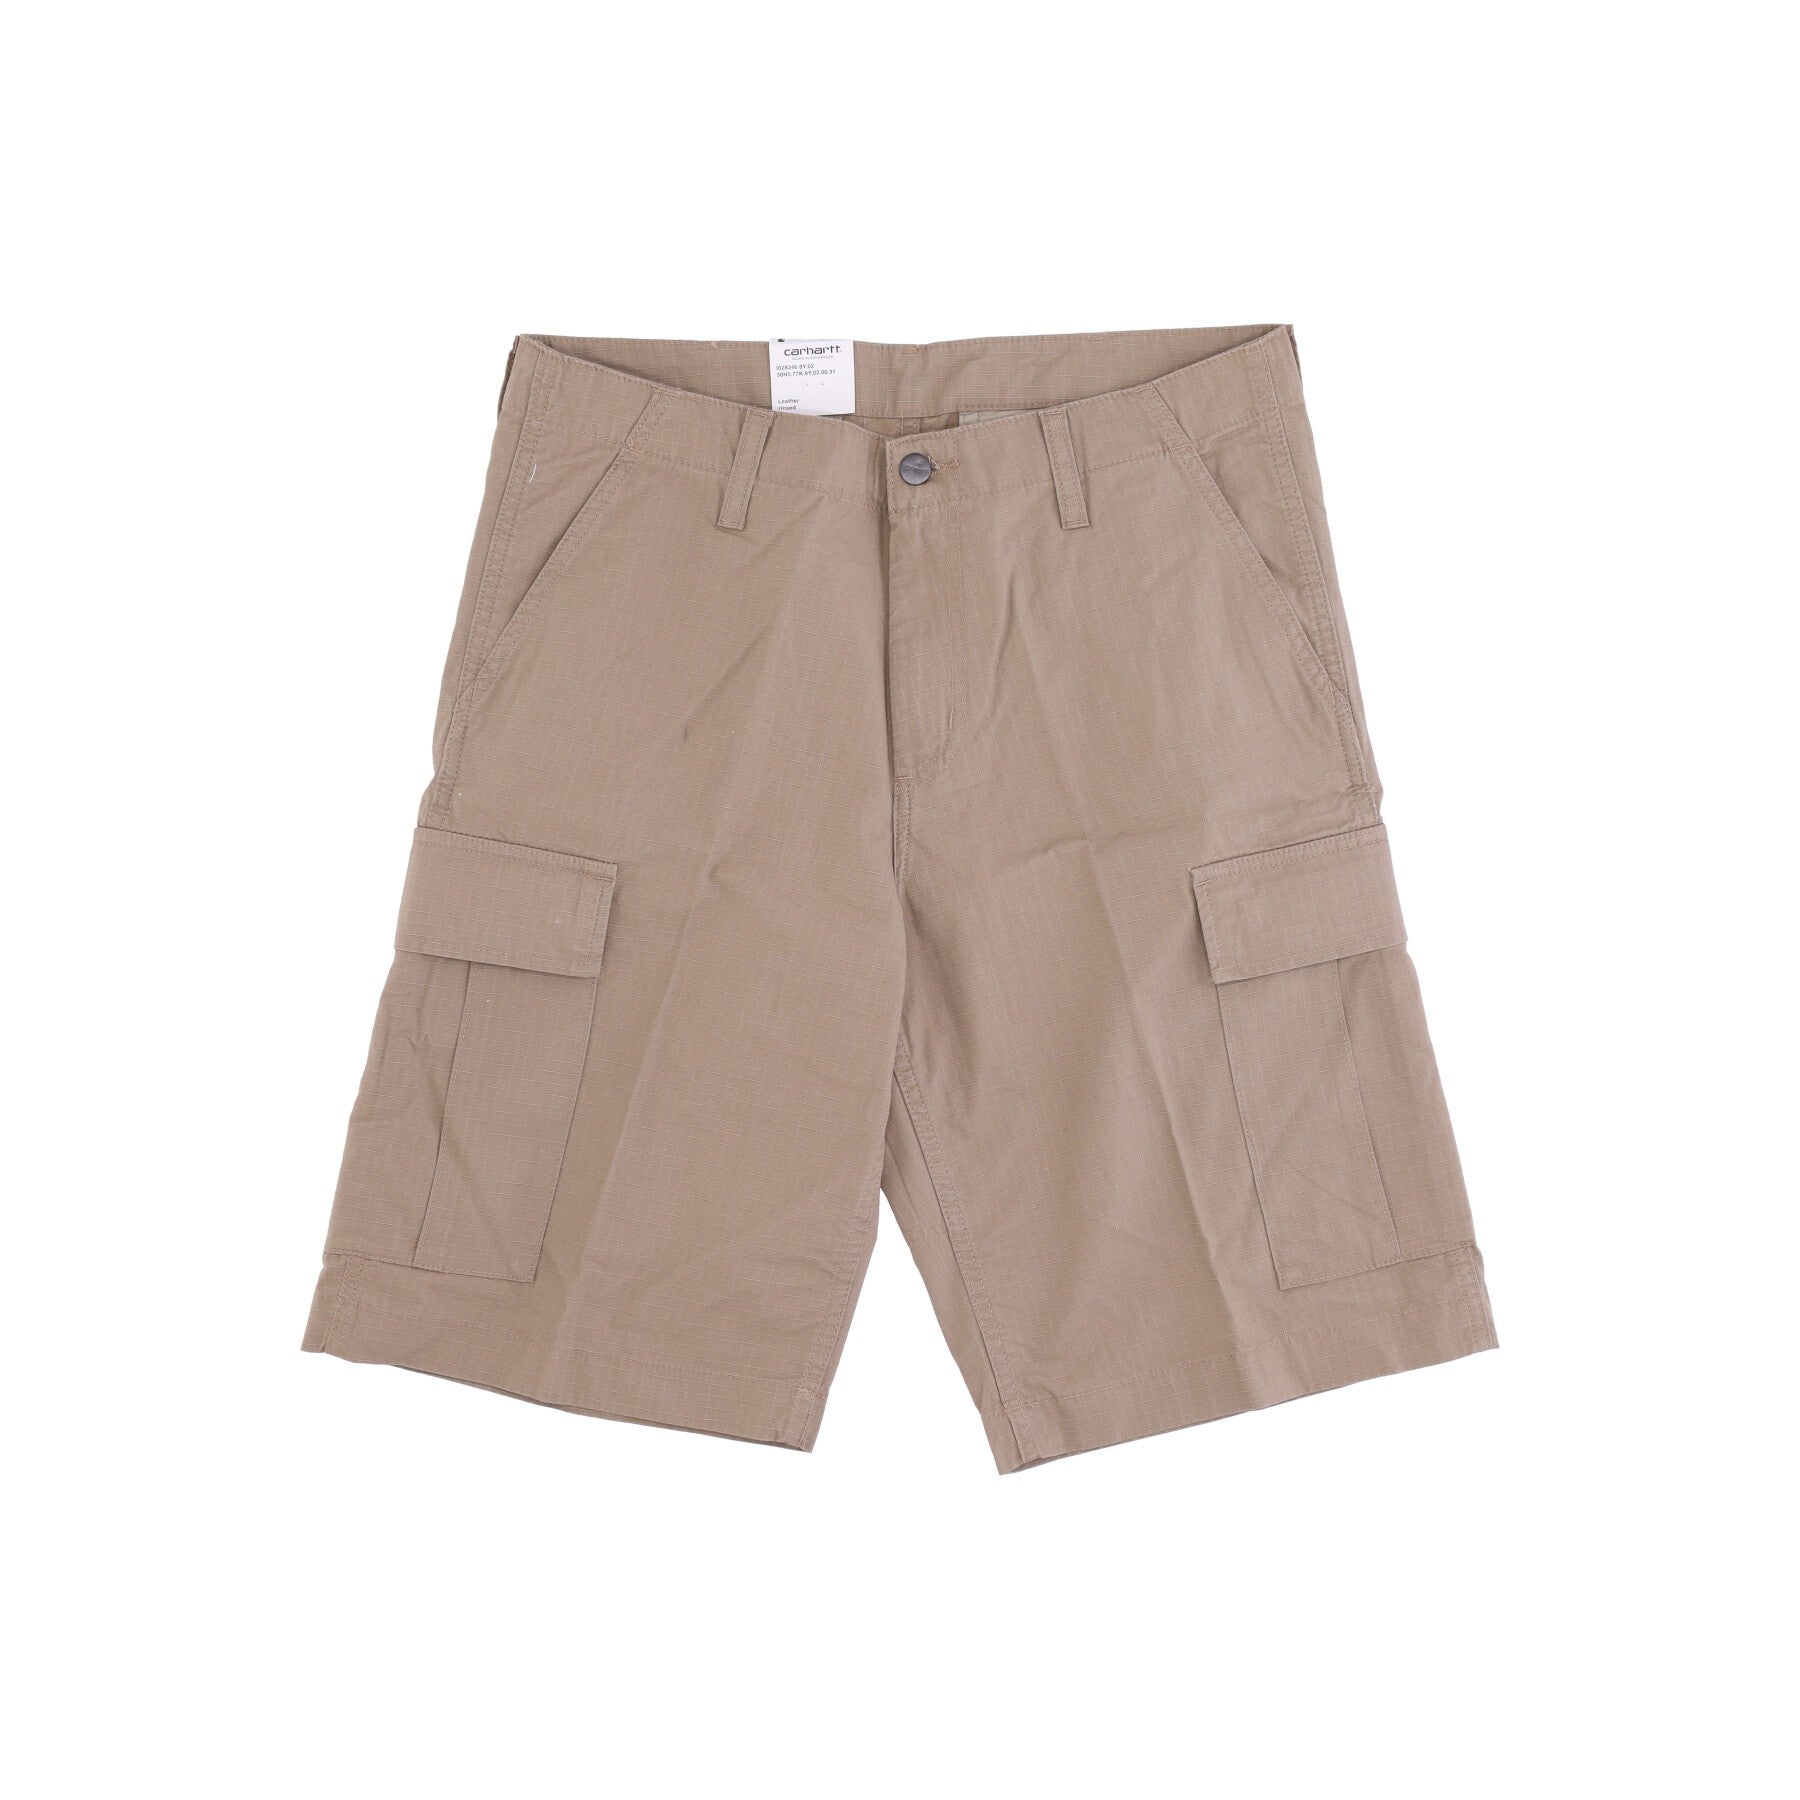 Pantalone Corto Uomo Regular Cargo Short Leather Rinsed I028246